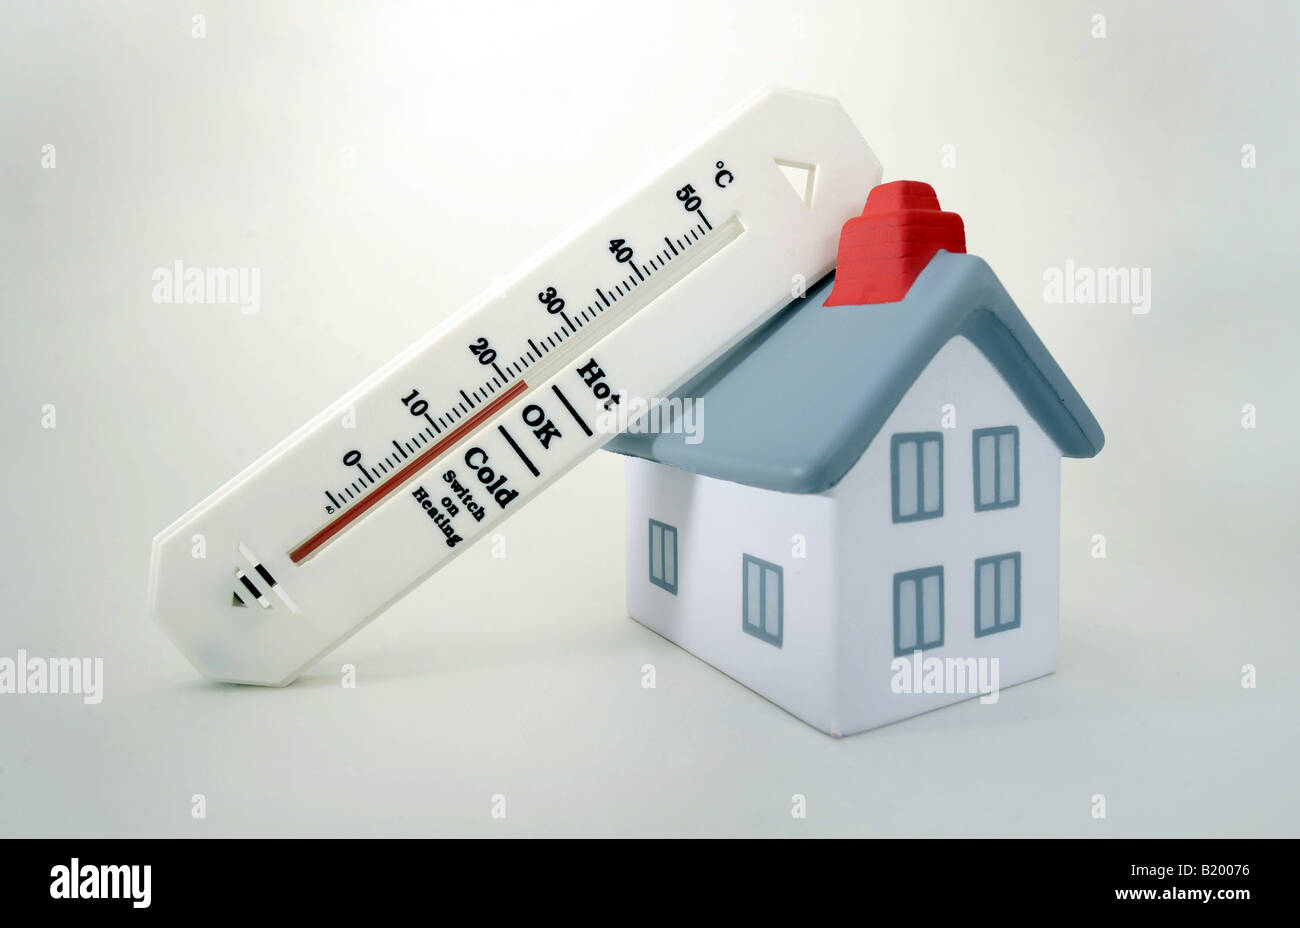 Chambre avec le thermomètre indiquant 20 degrés Celcius, TEMPÉRATURE AMBIANTE AUGMENTE LES COÛTS DE CHAUFFAGE DE NOUVEAU PROJETS DE CARBURANT D'HIVER,UK,BRITISH. Banque D'Images